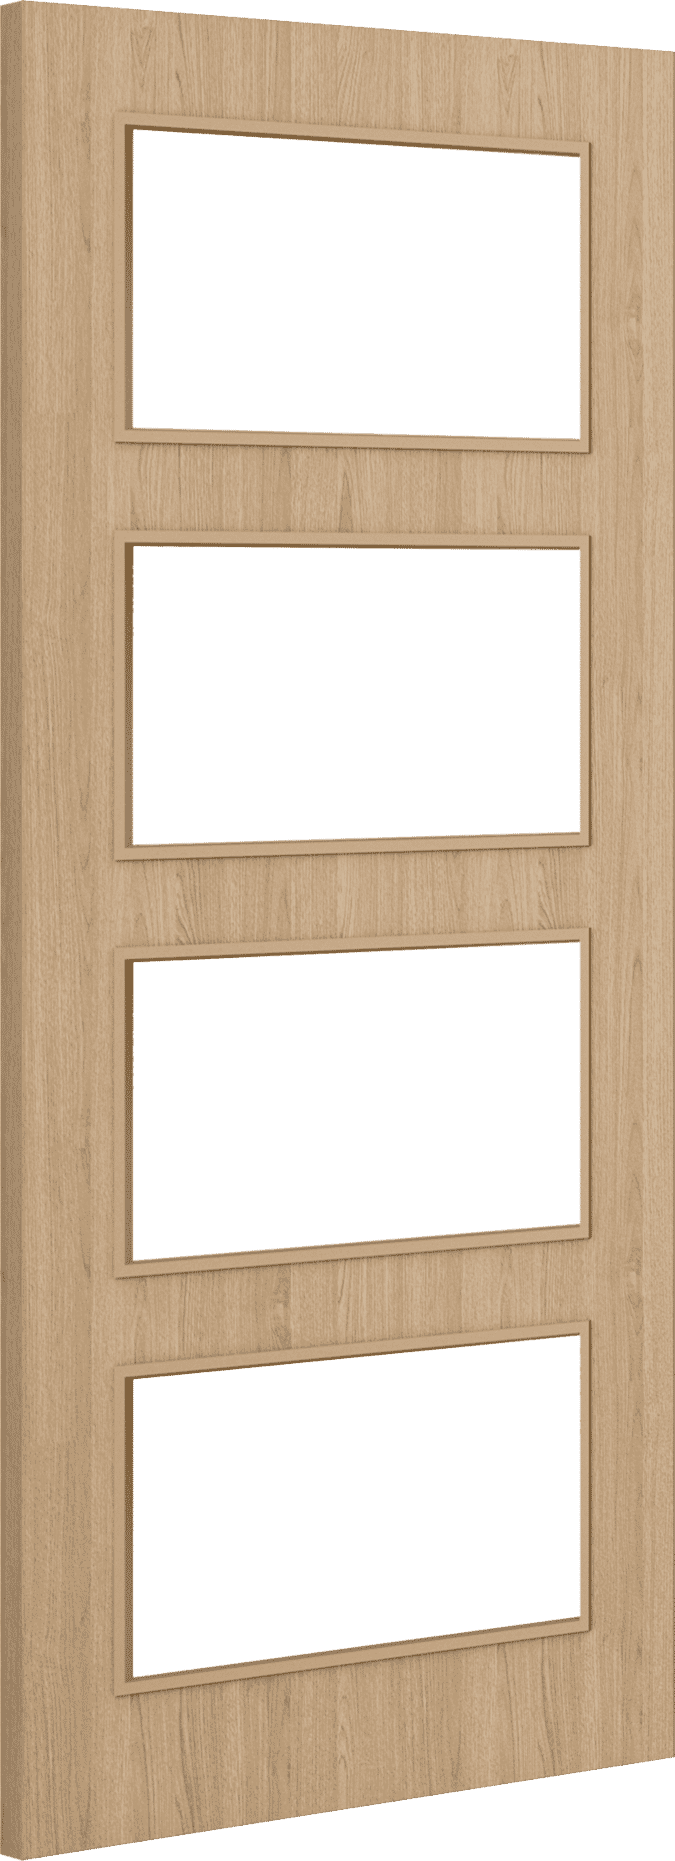 1981mm x 610mm x 44mm (24") Architectural Oak 04 Clear Glazed - Prefinished FD30 Fire Door Blank